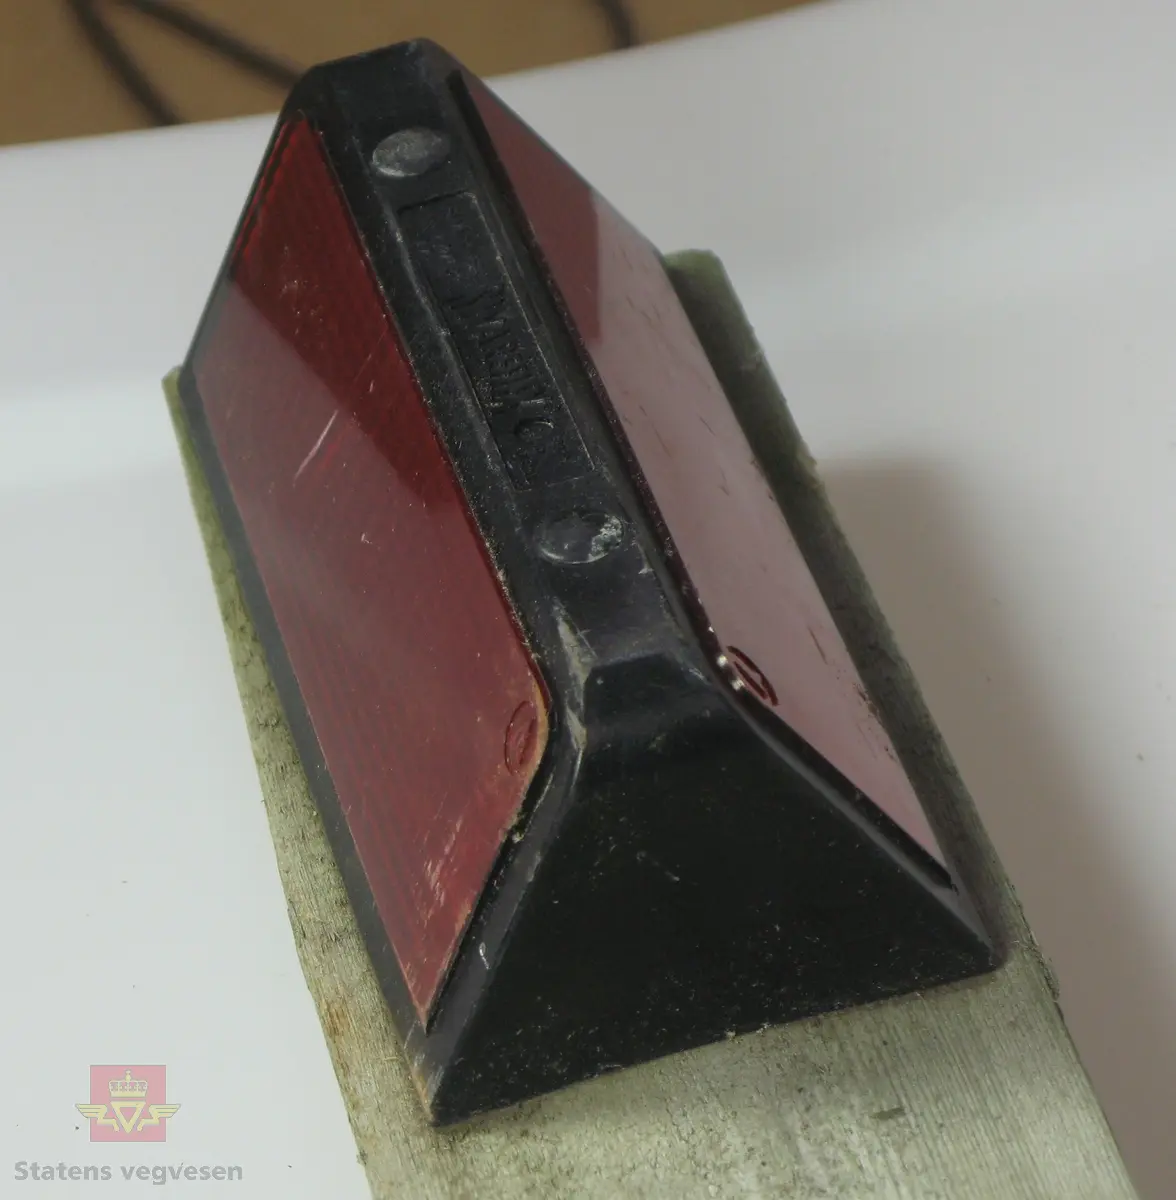 Viltspeil som består av rød refleks med svart omramming, lagd av plast. Festet til toppen av en stolpe, lagd av impregnert tre, spisset i enden. Stolpen er kuttet på langs slik at den utgjør halvparten av en sylindrisk stolpe. Merking fra produsent.